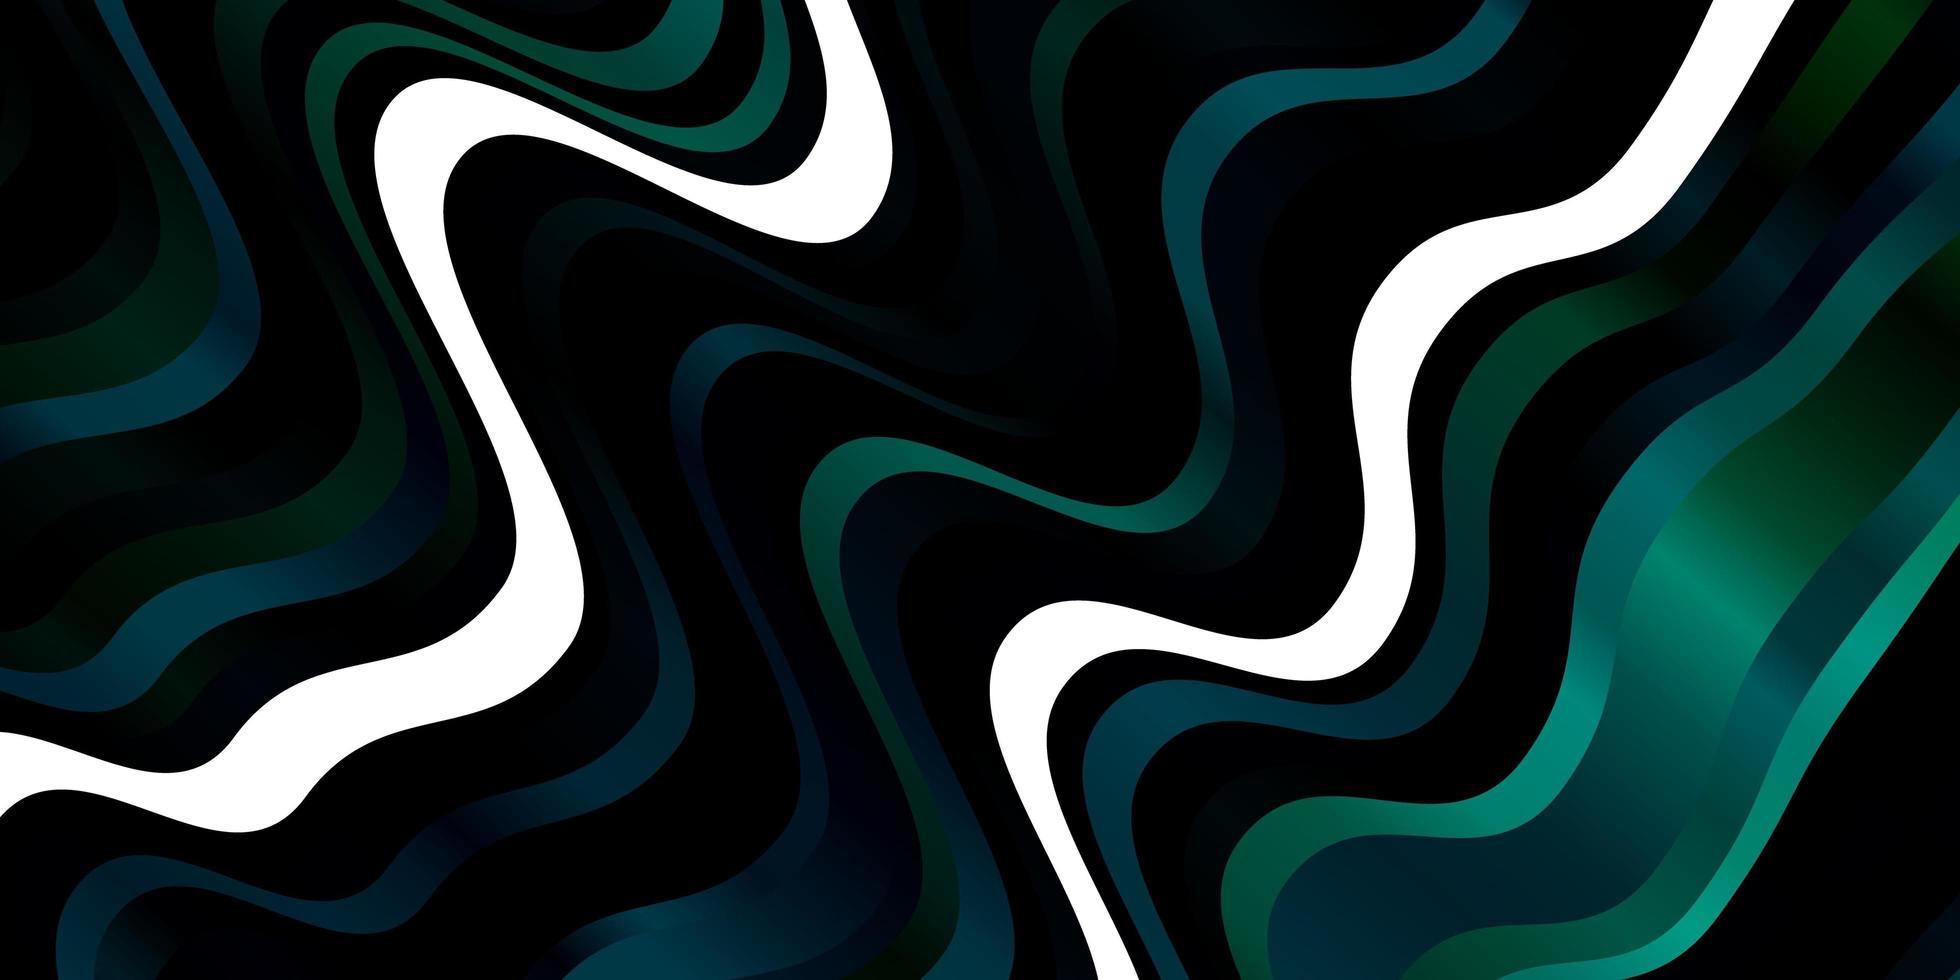 hellblaues, grünes Vektorlayout mit Kurven. bunte Illustration im kreisförmigen Stil mit Linien. Muster für Geschäftsbroschüren, Broschüren vektor